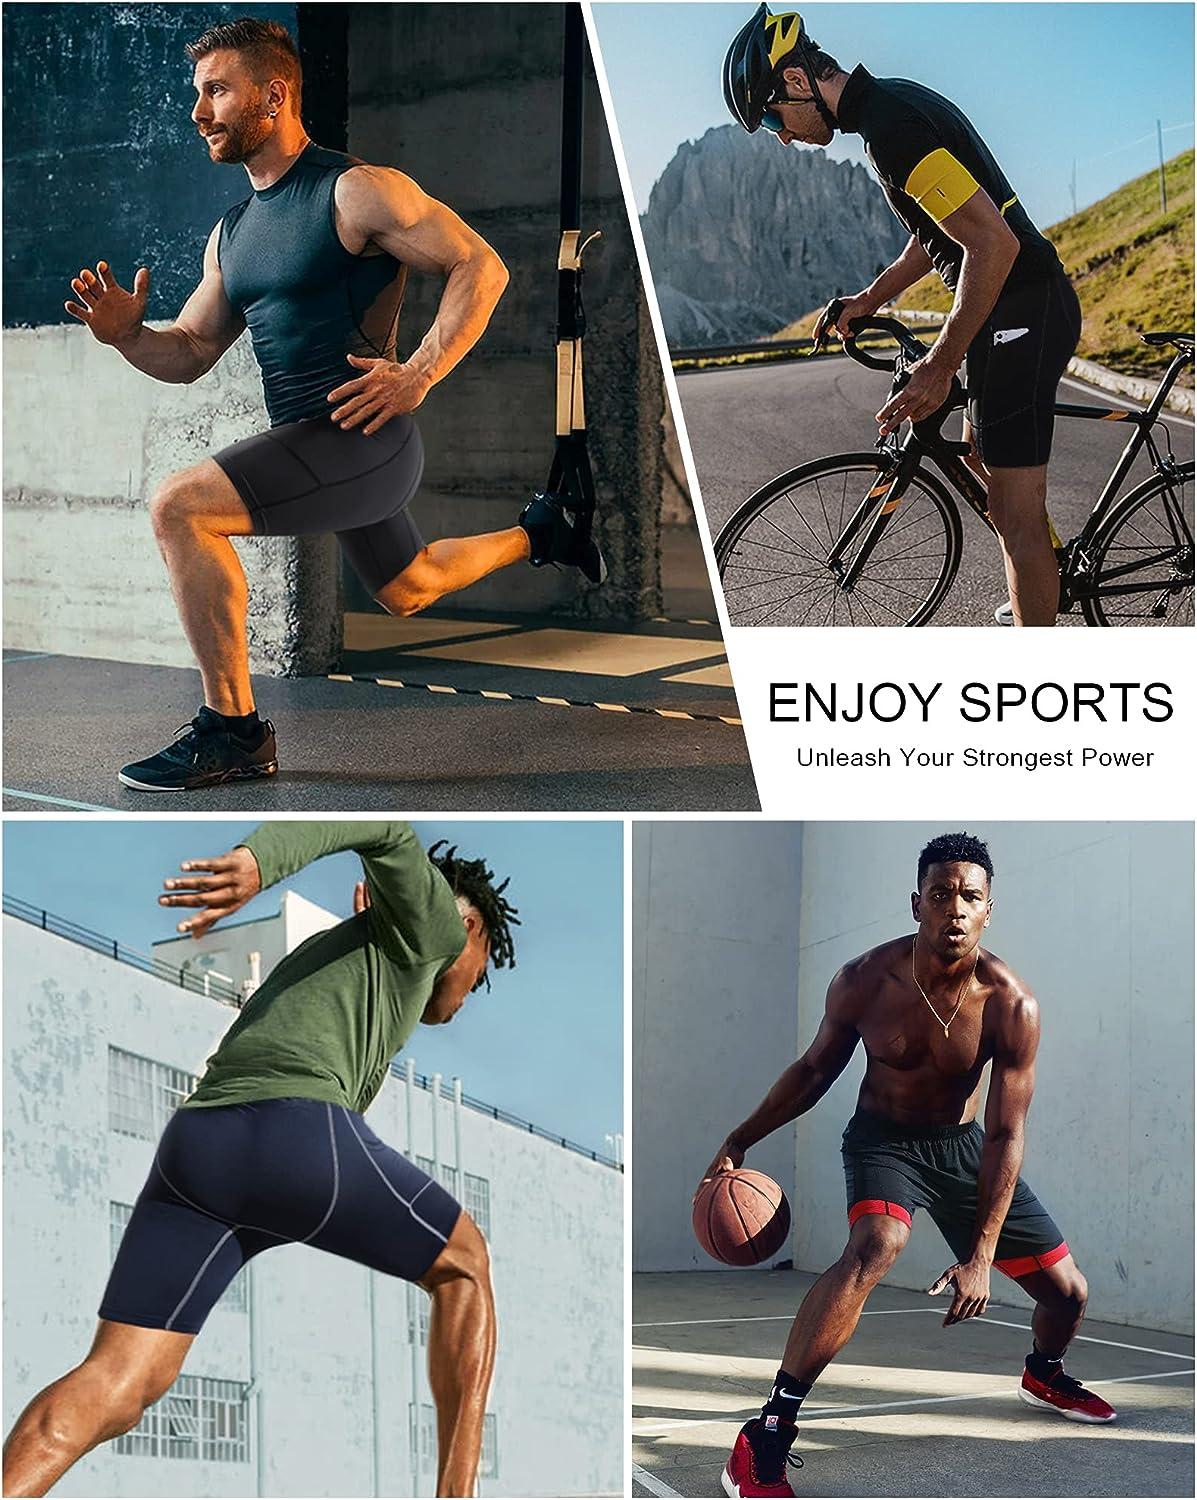 Compression Shorts for Sport, Men, Black